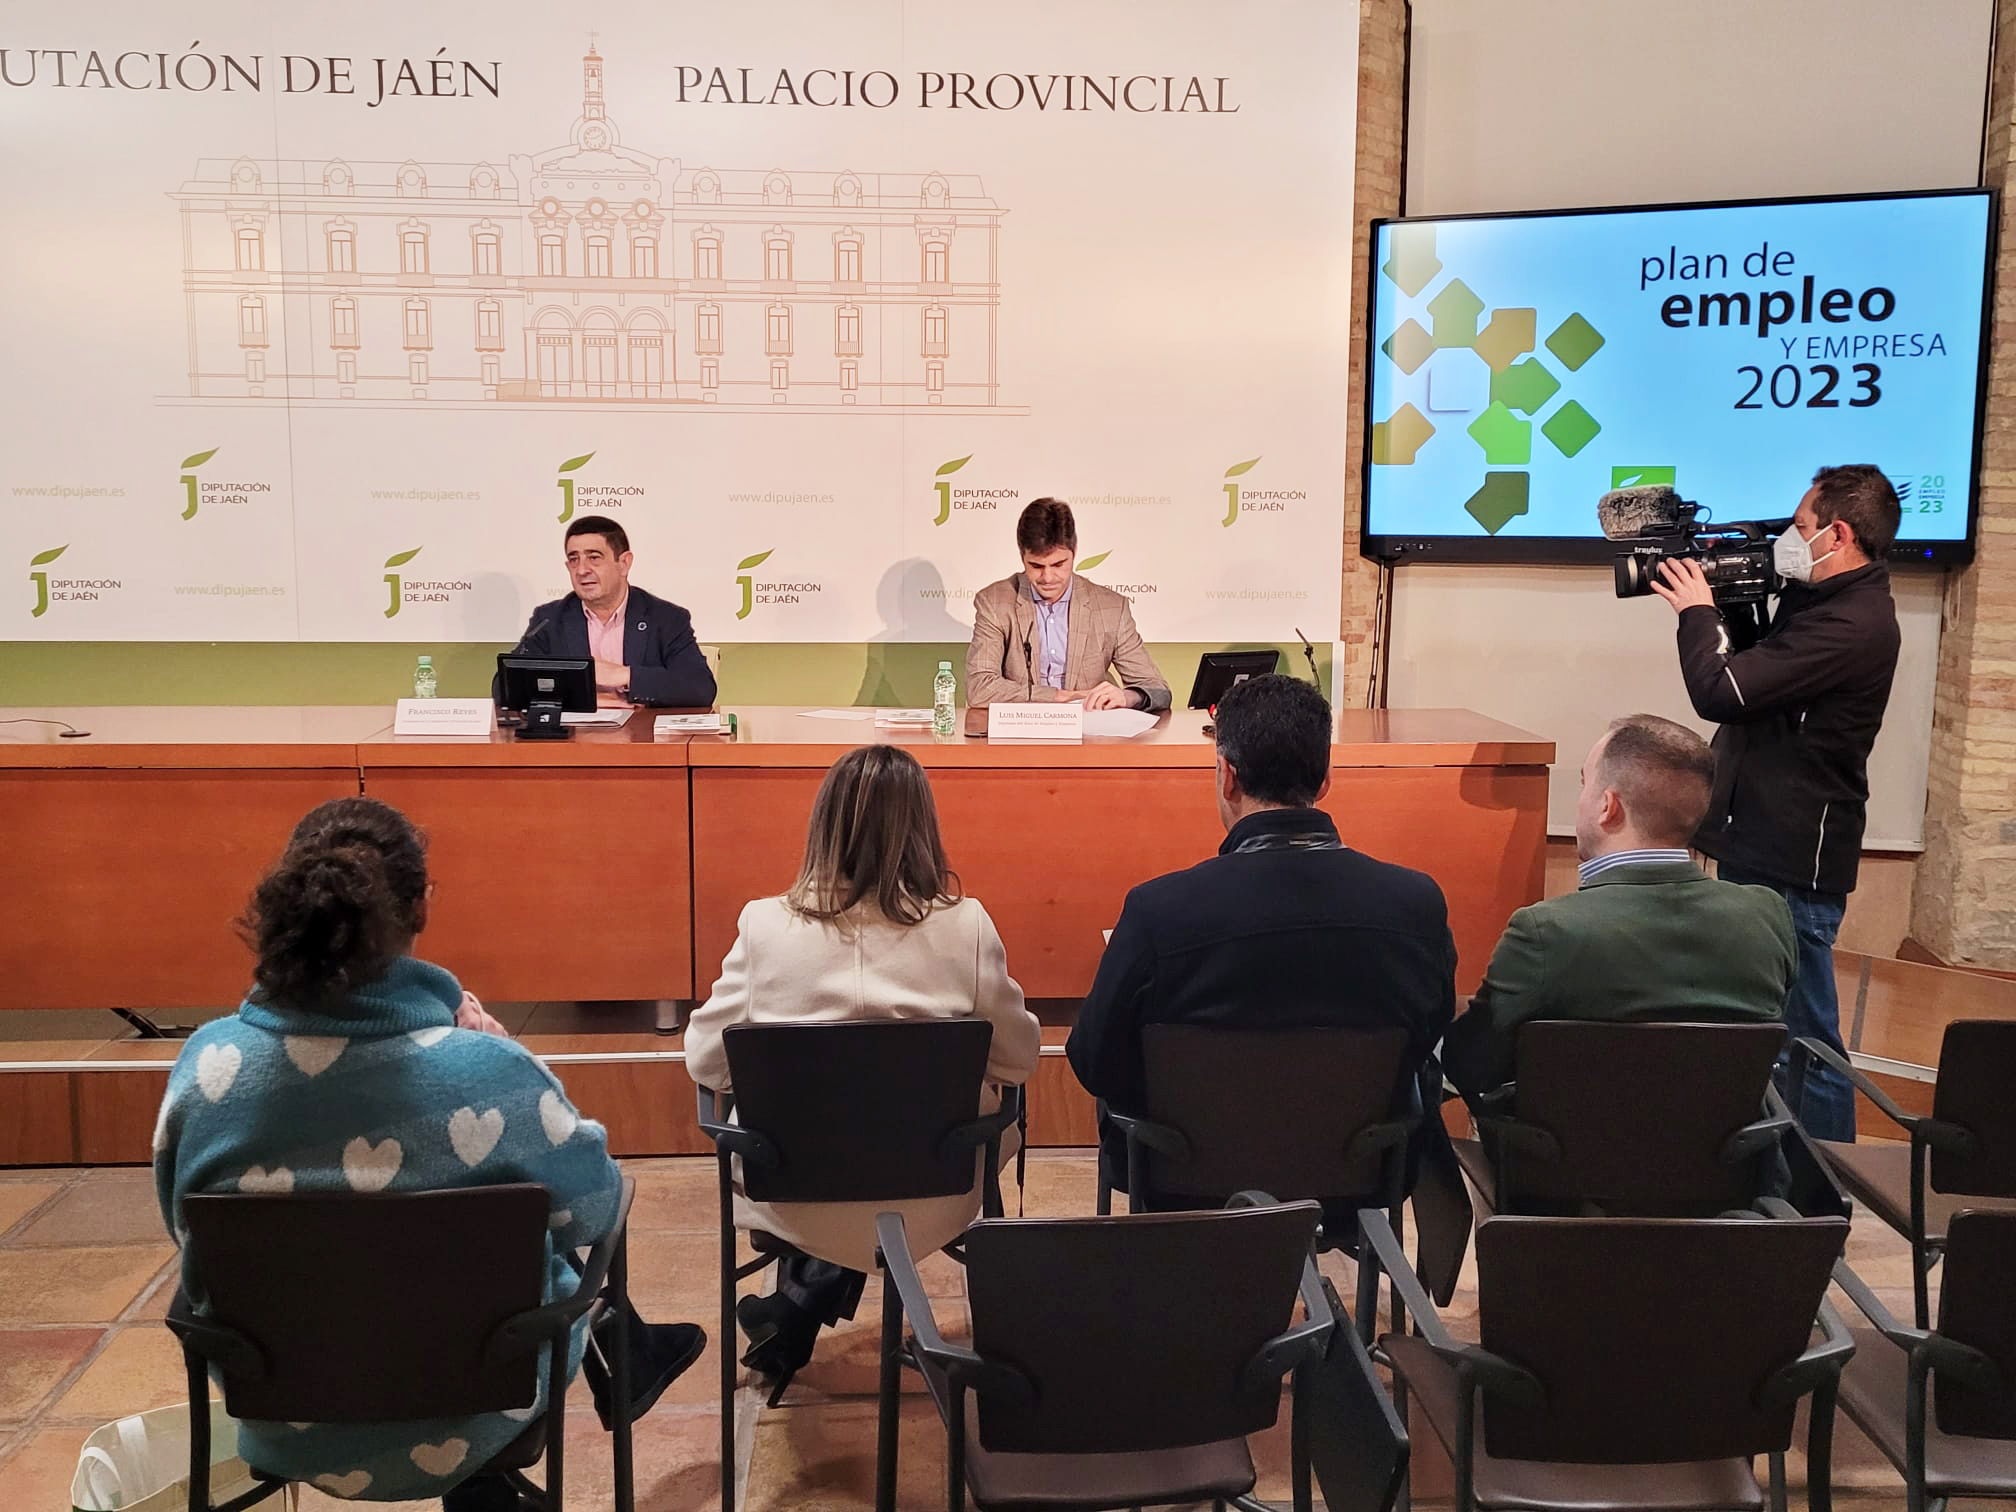 Diputación impulsa el Plan de Empleo y Empresa 2023, dotado con más de 15,5 millones y más de 30 actuaciones